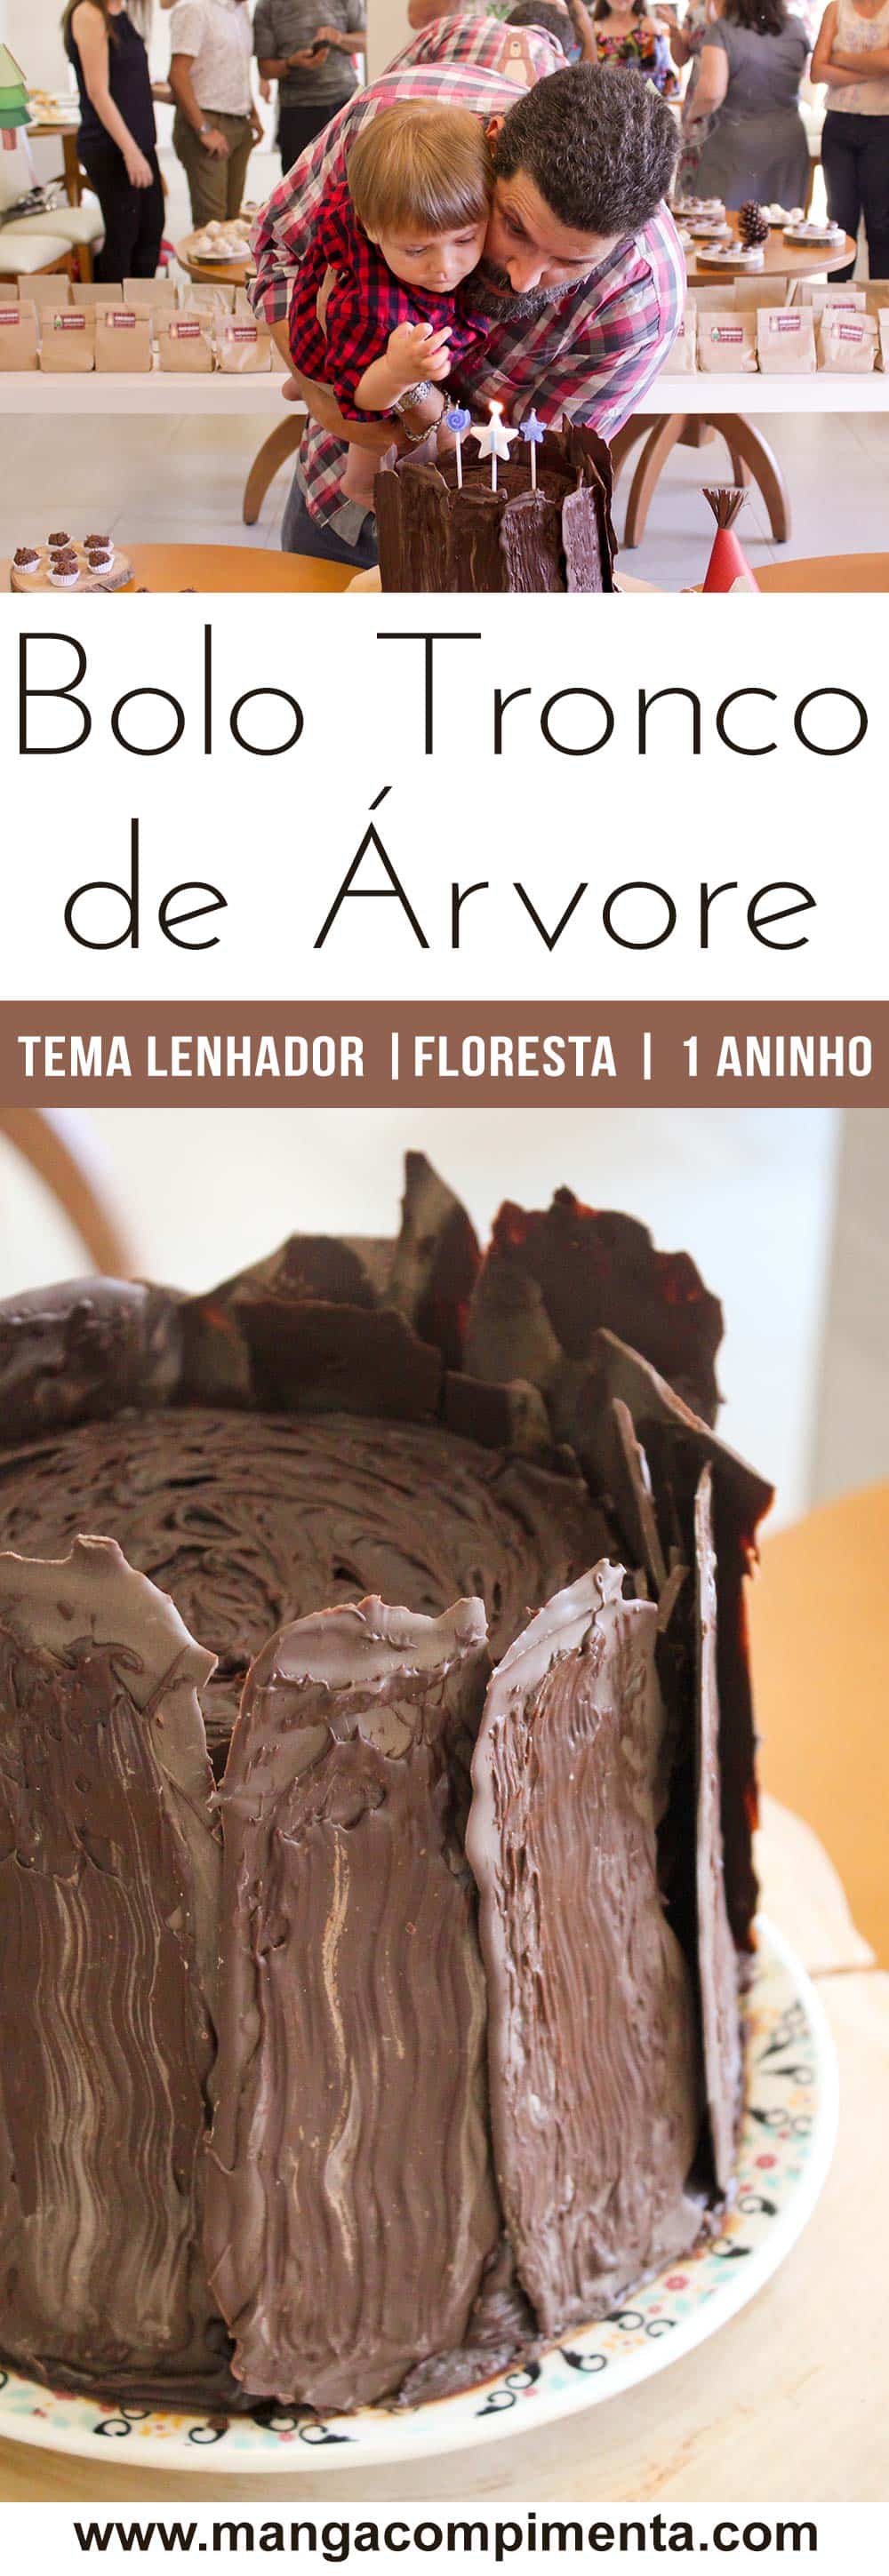 Receita do Bolo de Aniversário Tronco de Árvore - Sabor Chocolate, Recheio de Brigadeiro e Cobertura de Ganache.